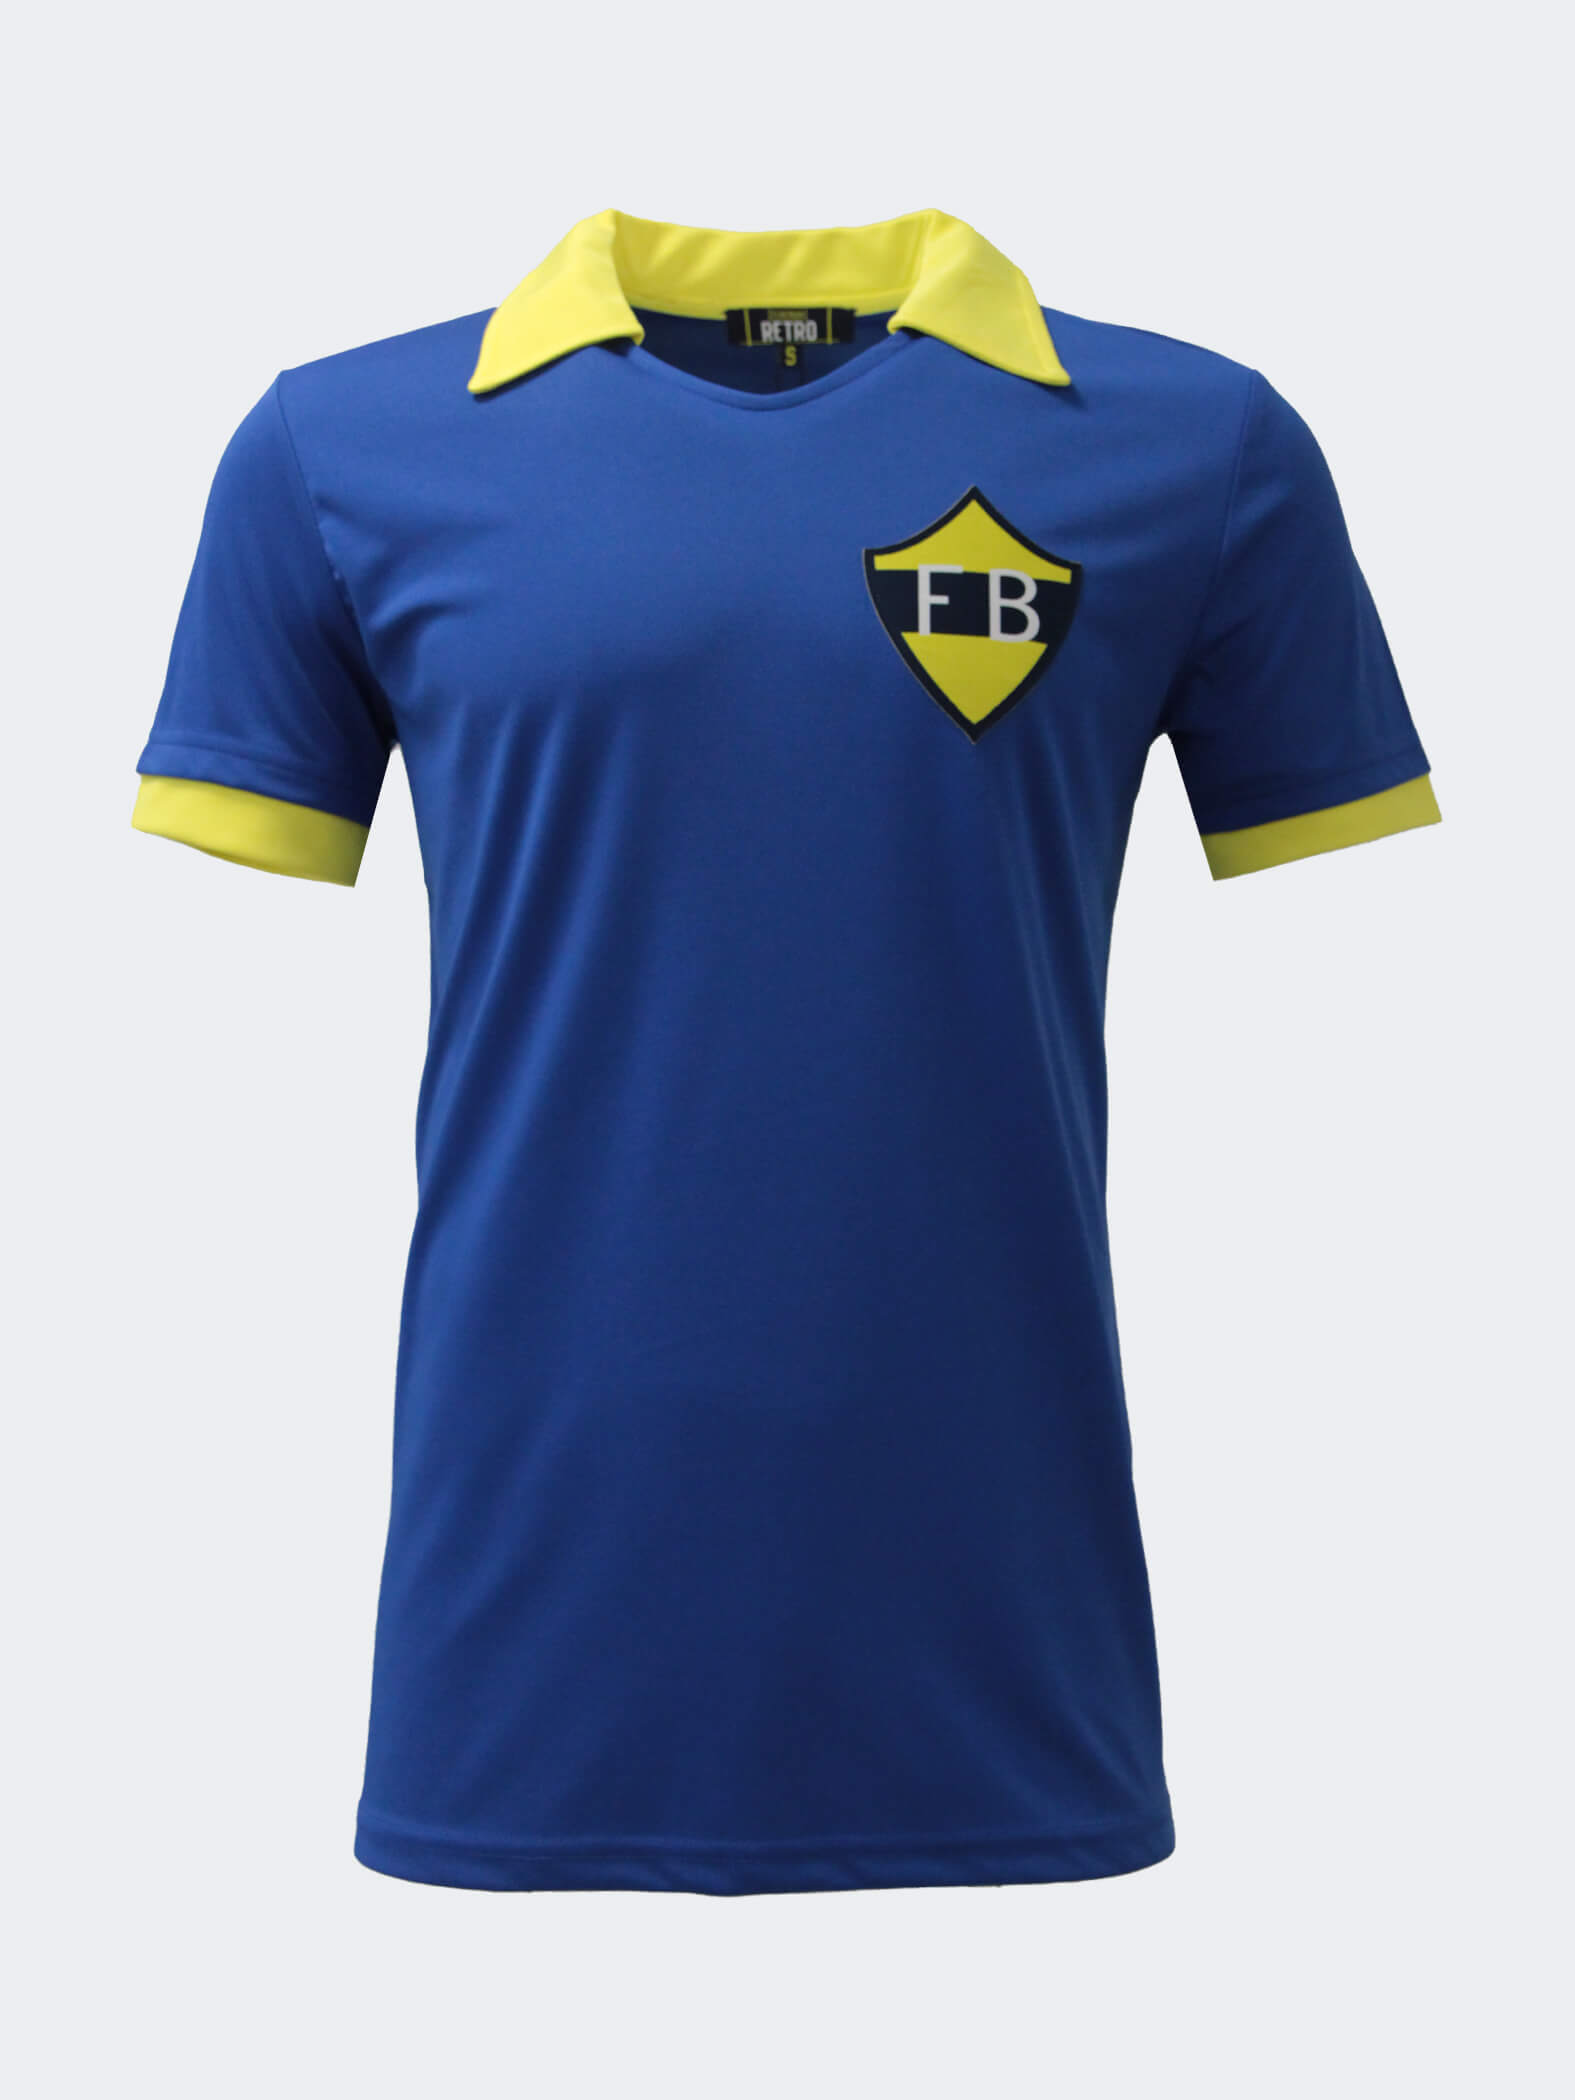 Unisex Navy Blue Retro FB Polo Tshirt